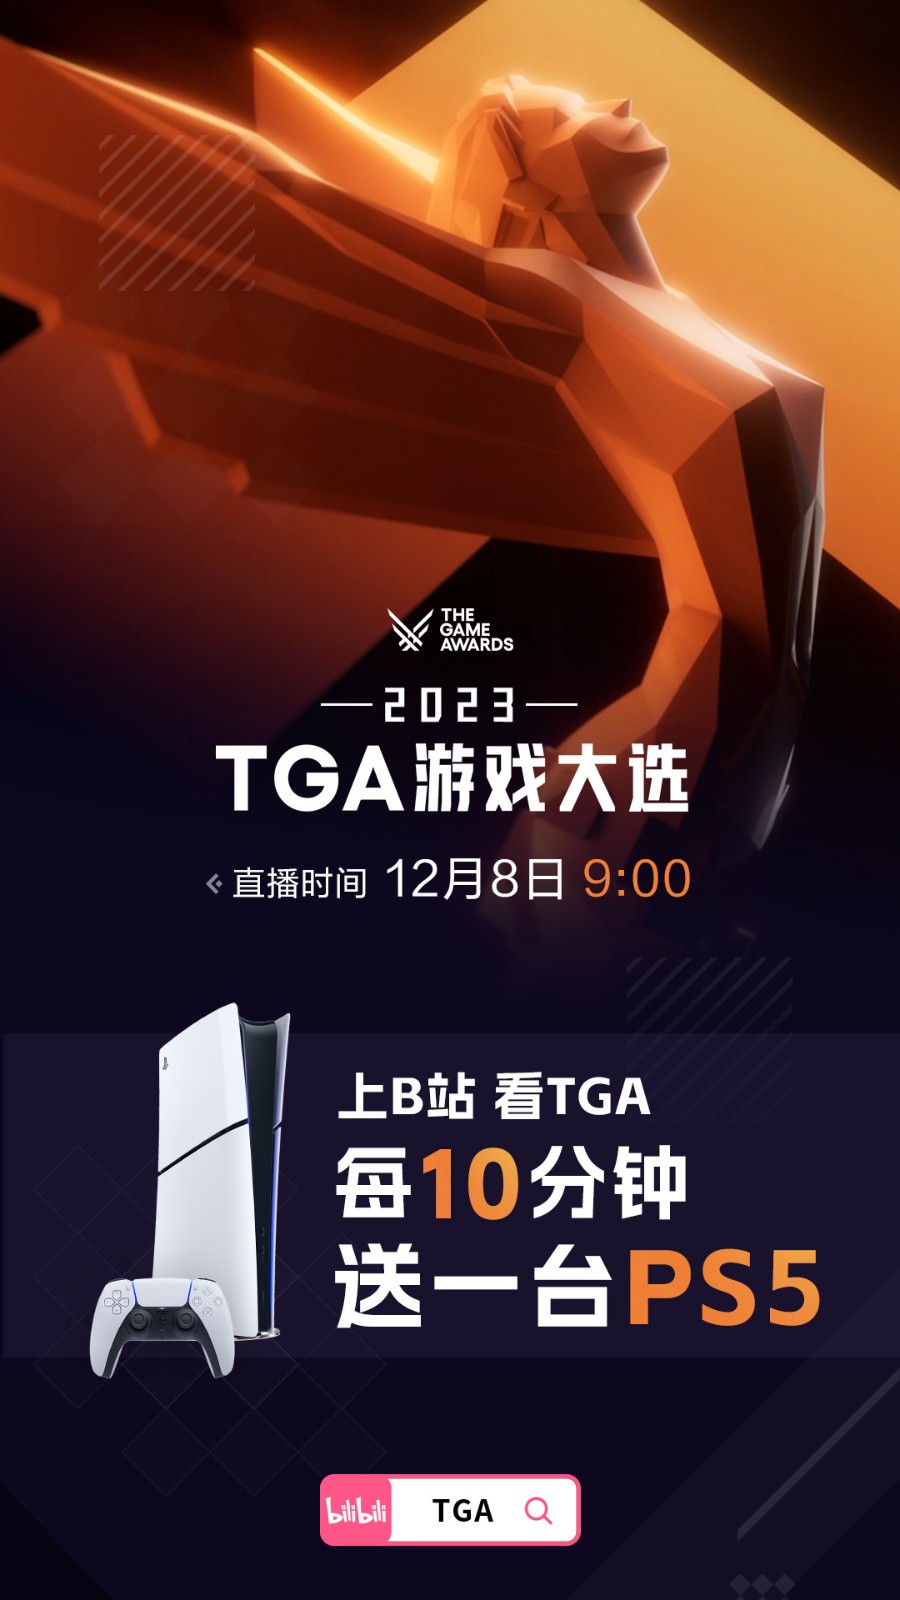 TGA官方B站直播8日上午9点开启 每10分钟送一台PS5